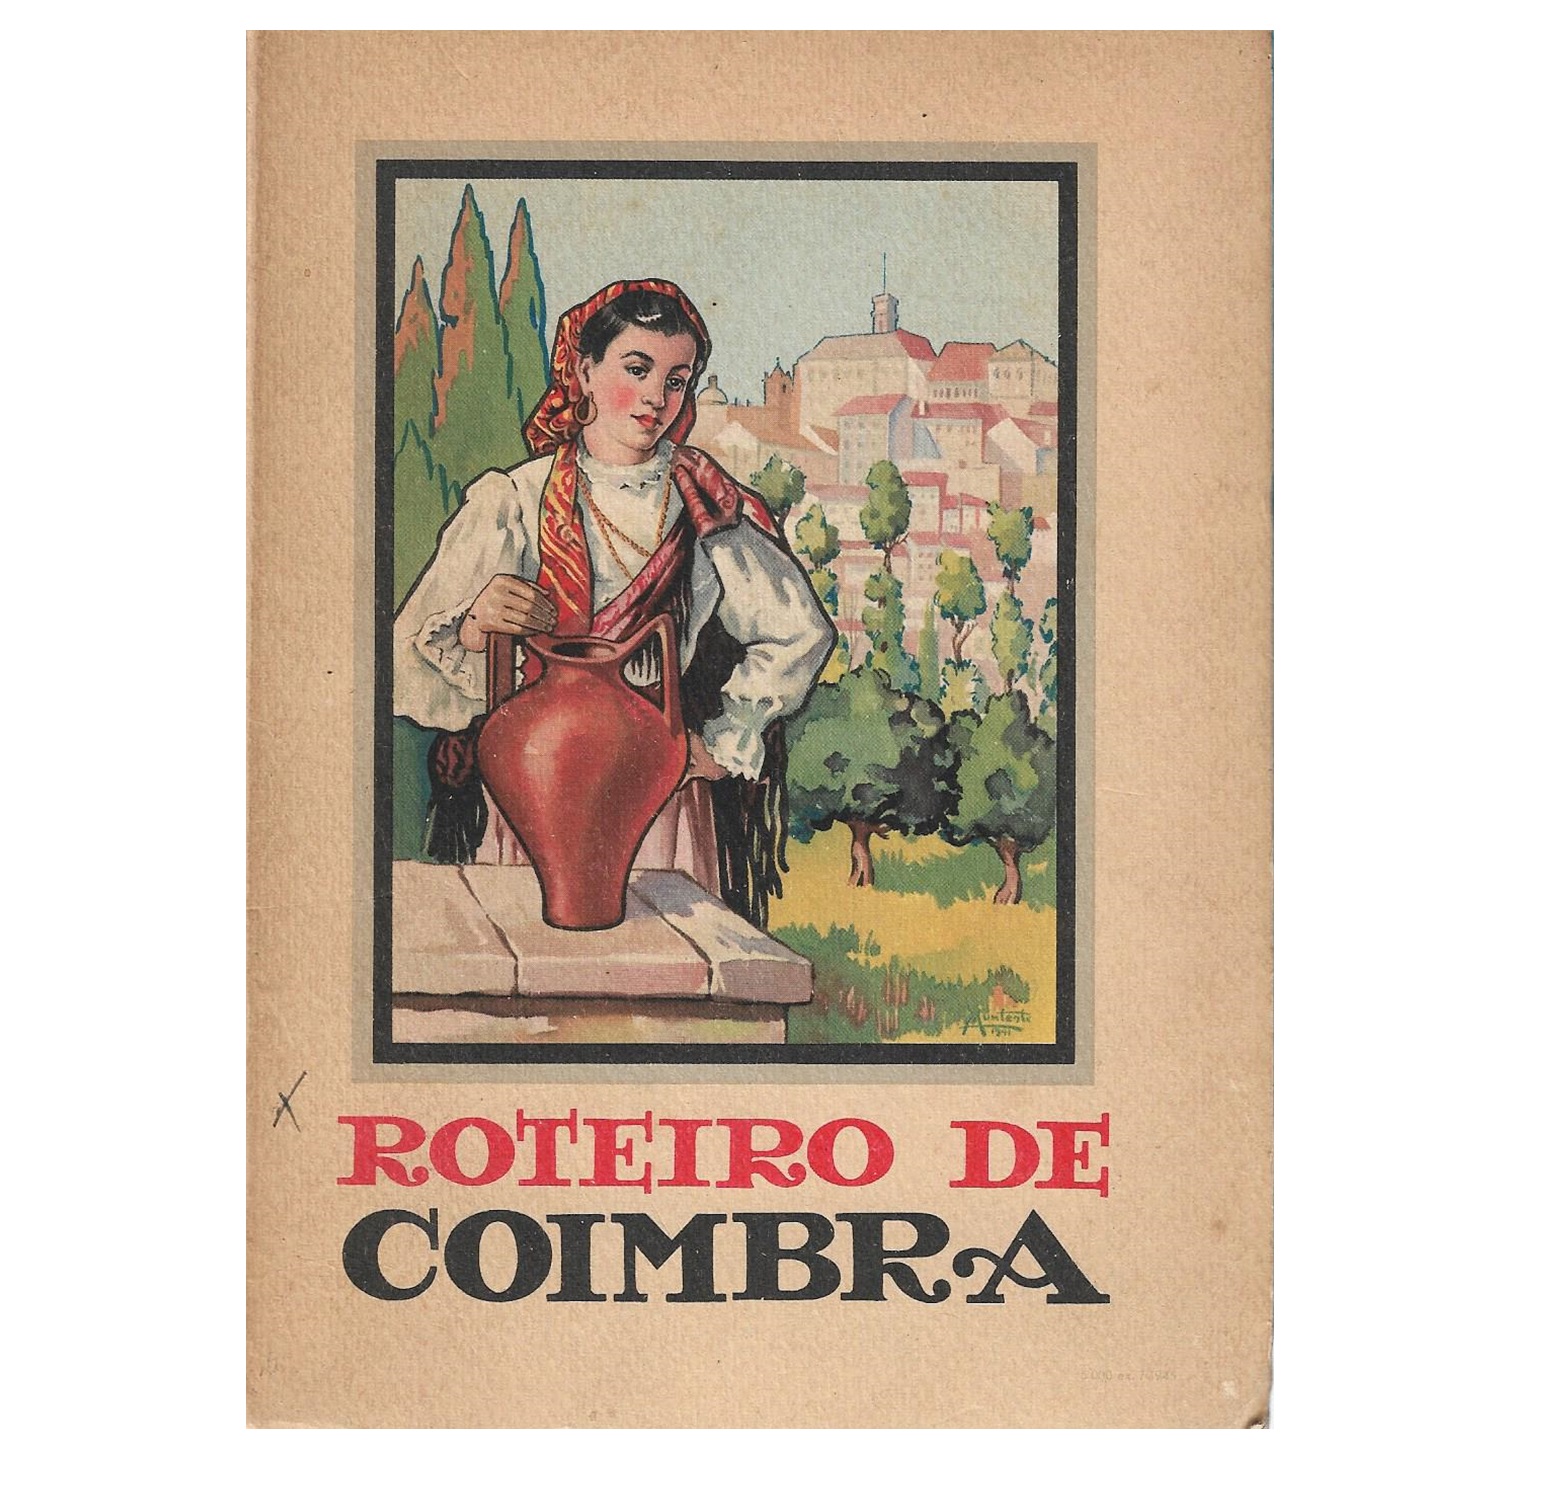 ROTEIRO DE COIMBRA